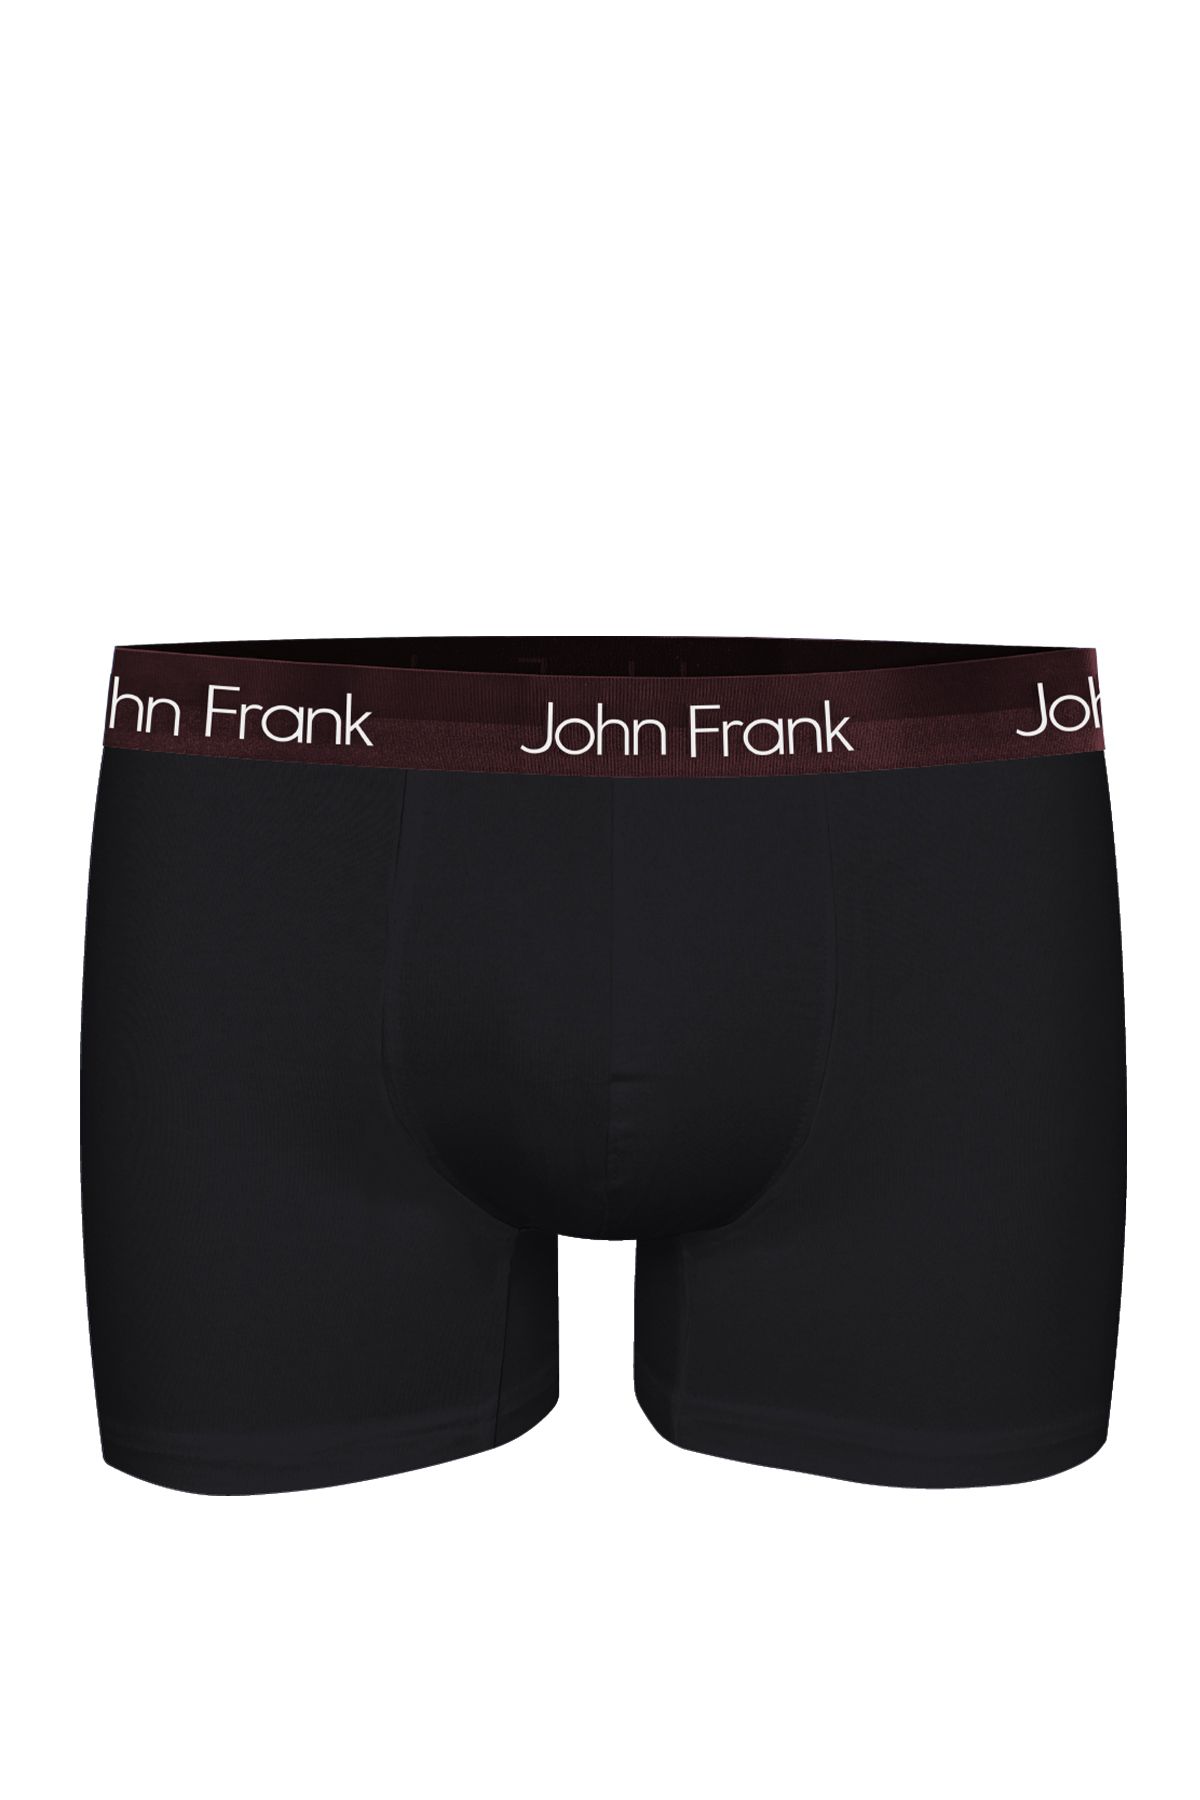 John Frank JOH FRANK PREMIUM BLACK BOXER SİYAH-BORDO